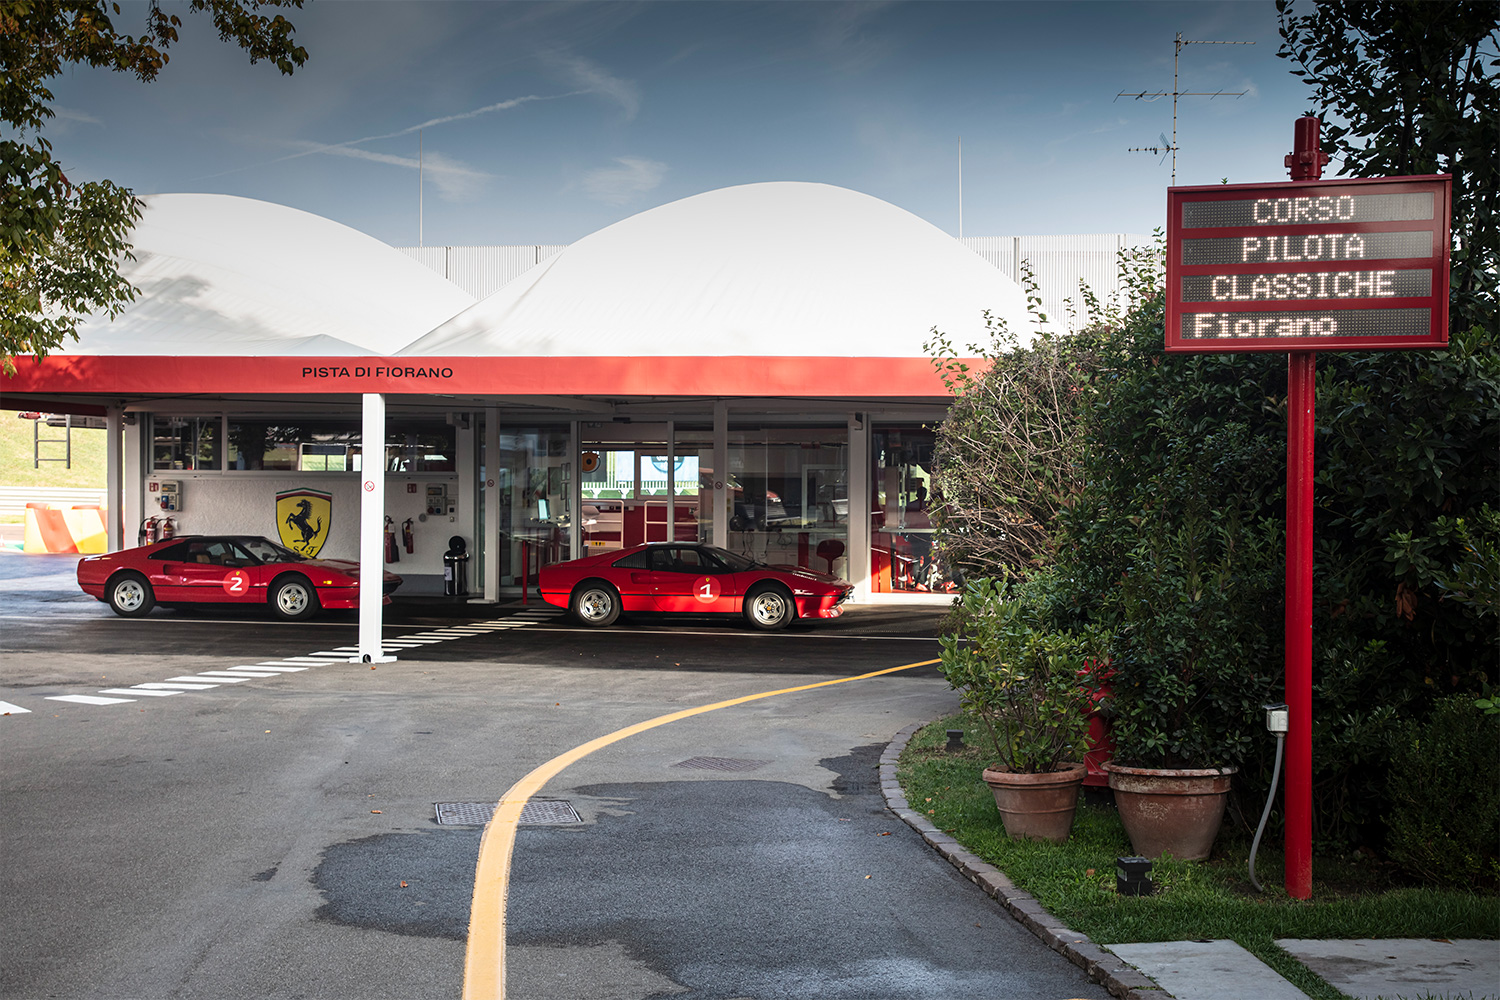 The entrance to the Fiorano Circuit, where the Ferrari Corso Pilota Classiche driving school is held